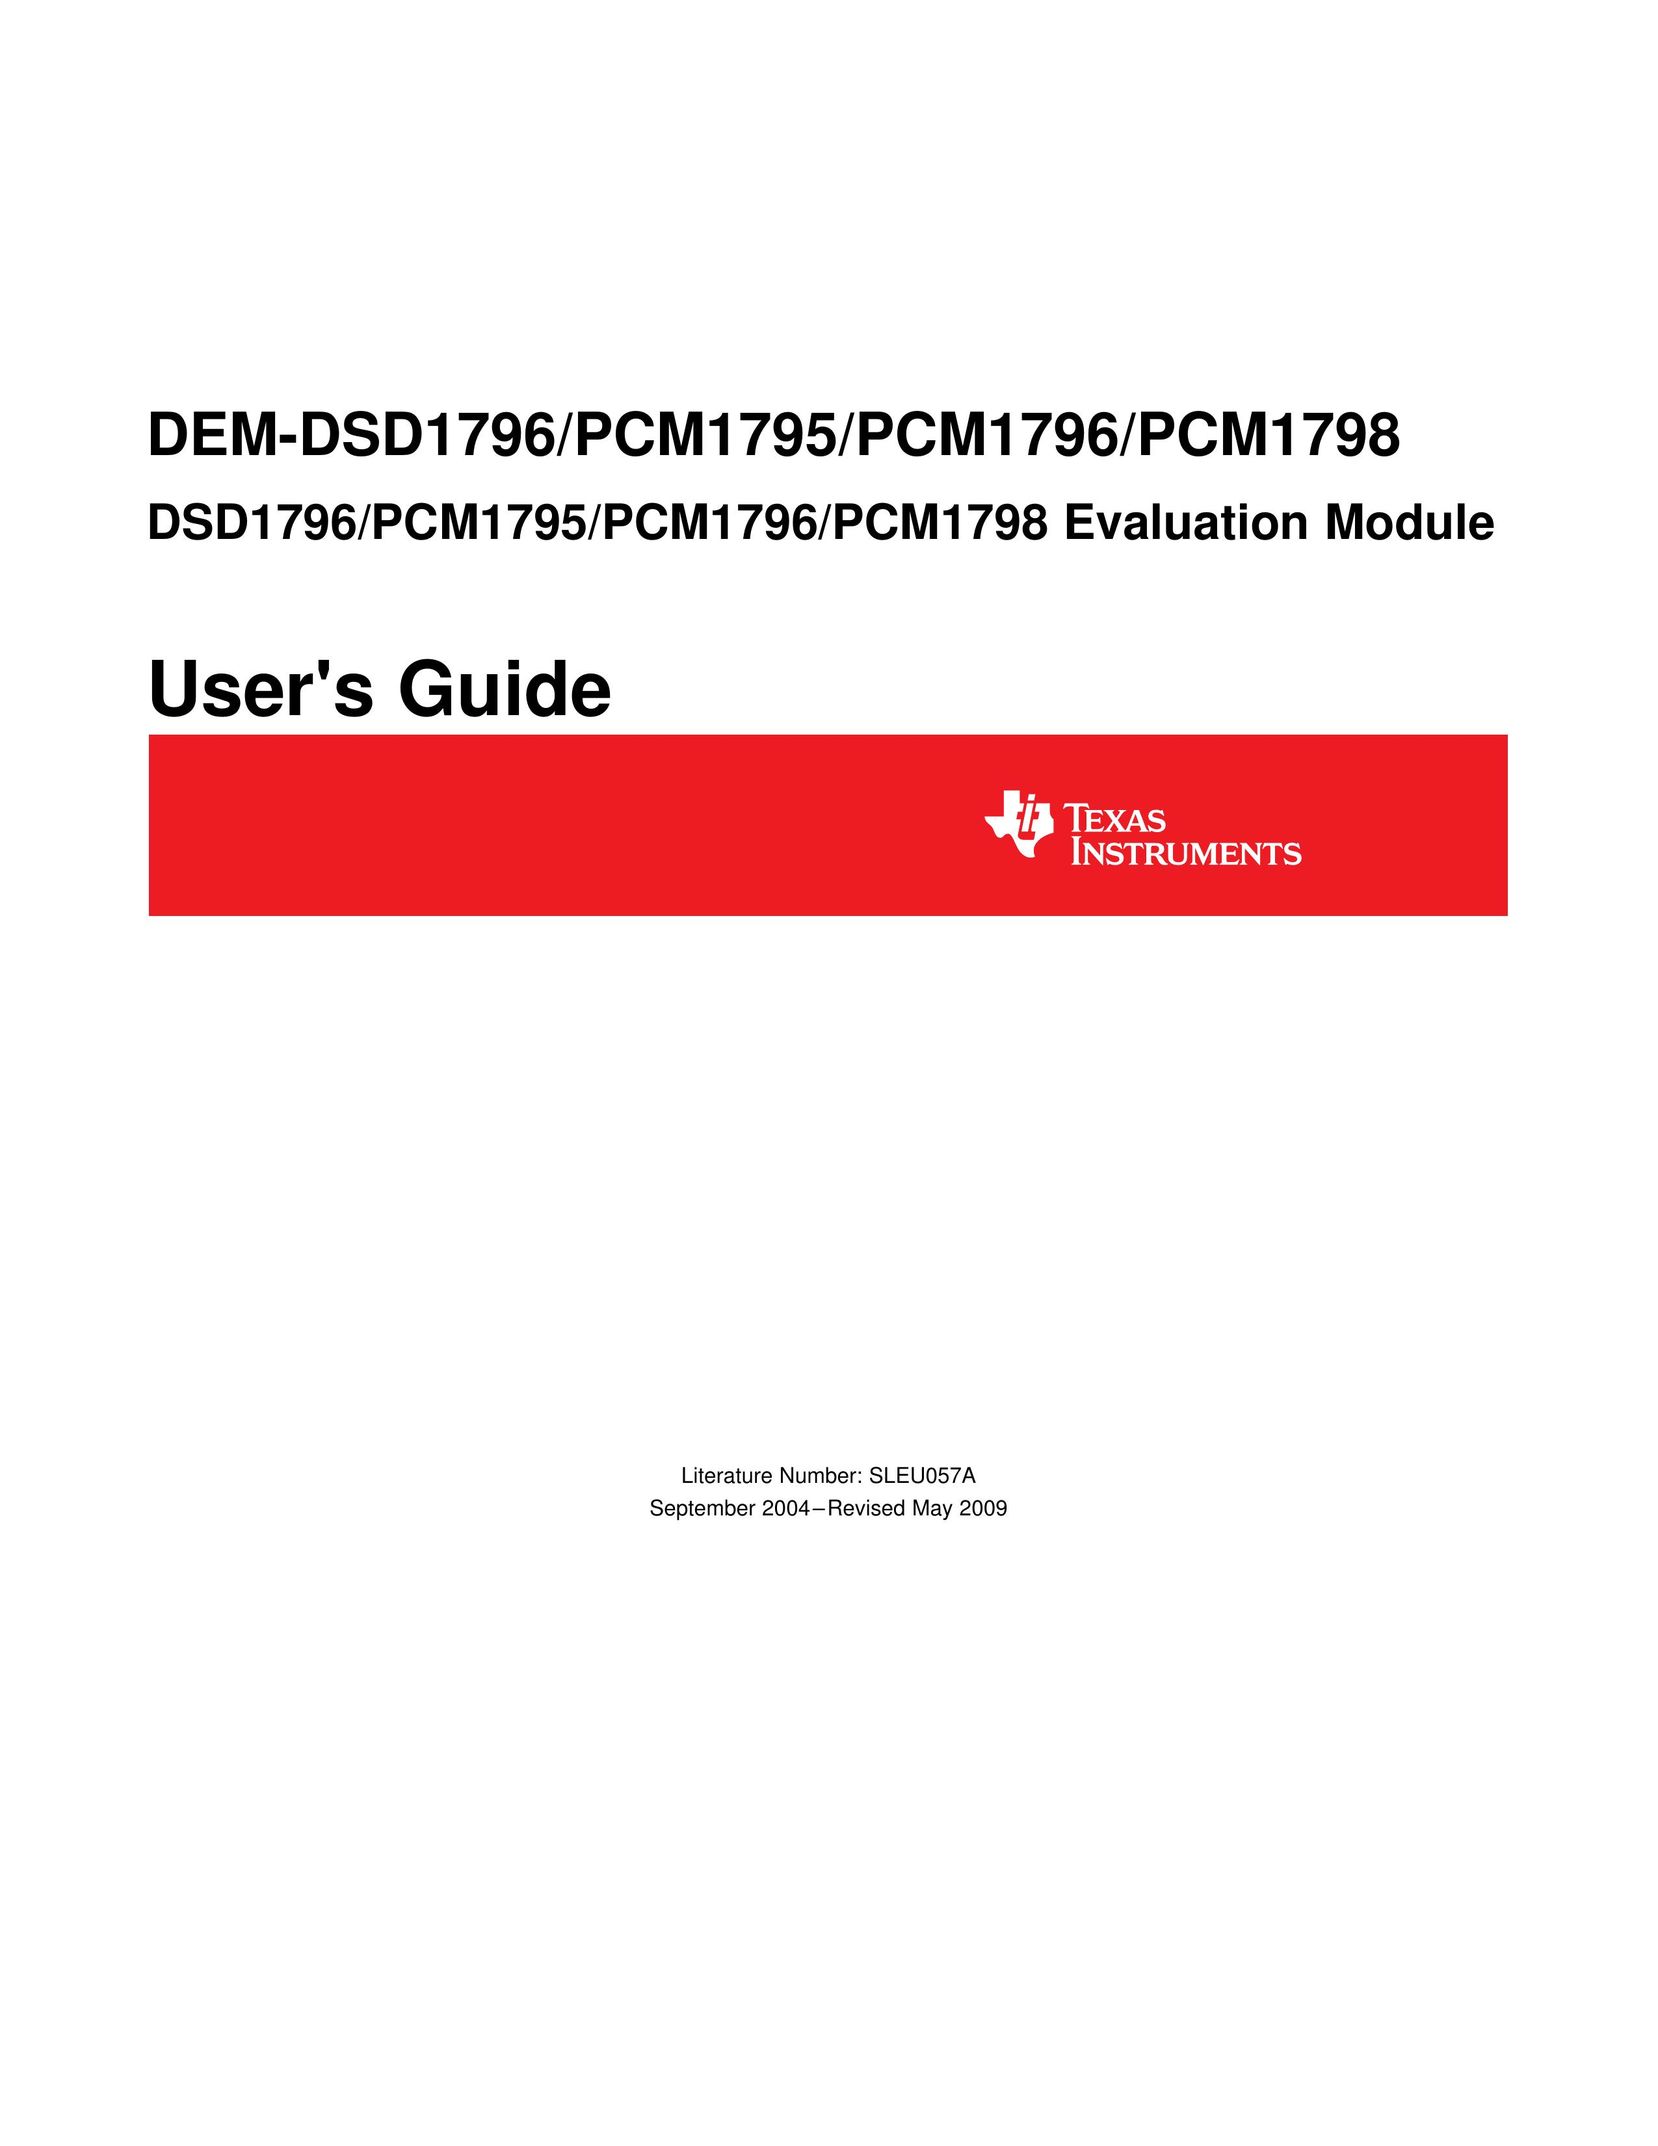 Texas Instruments DEM-DSD1796 TV Cables User Manual